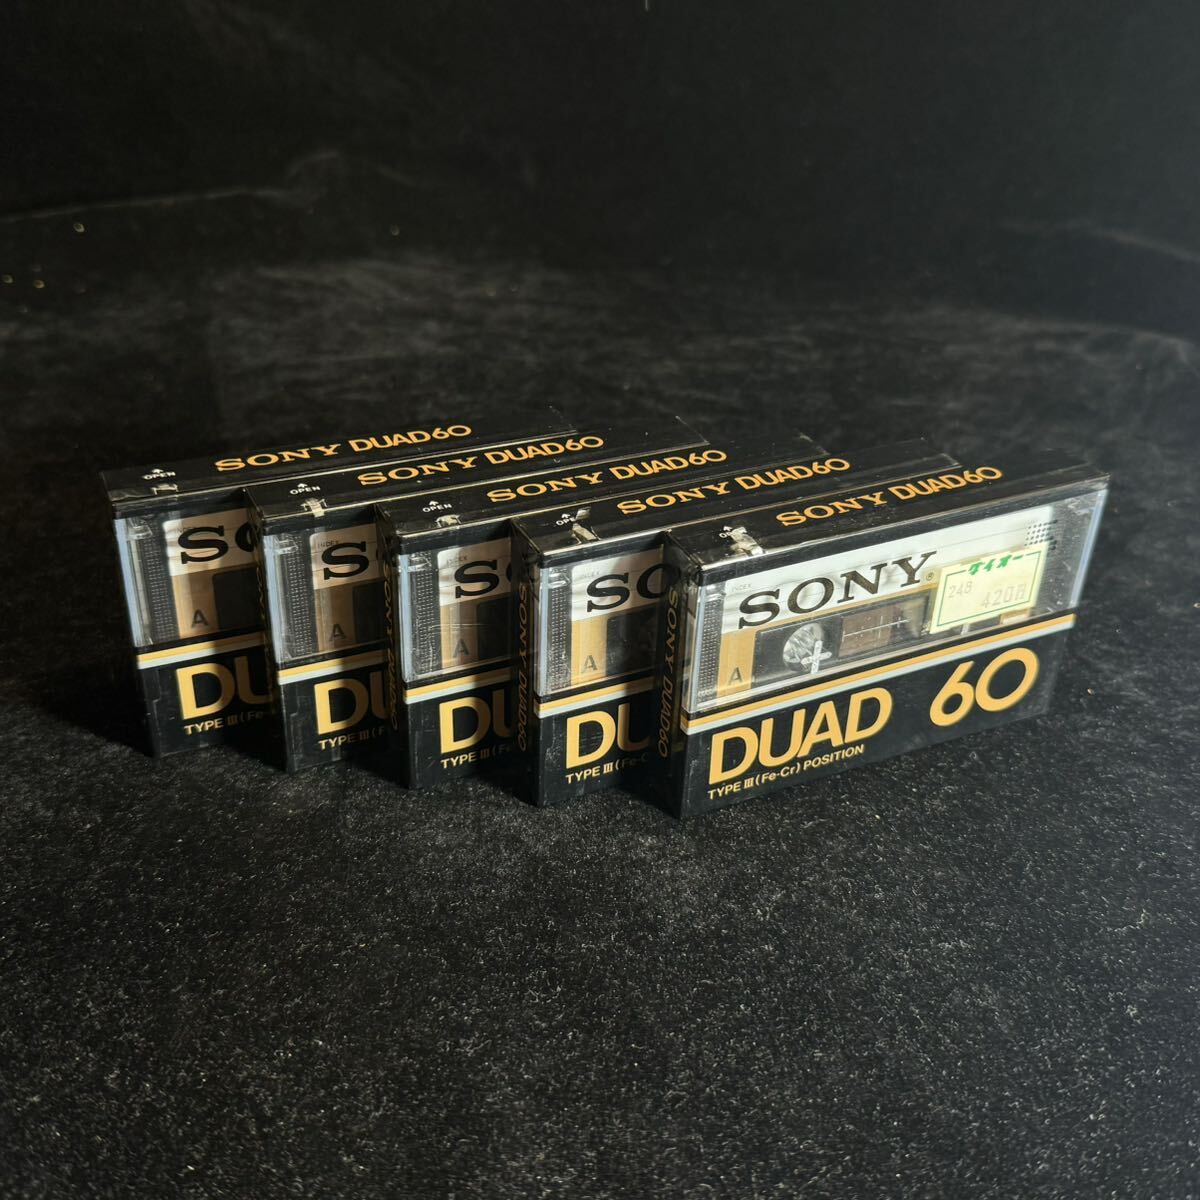 未使用 SONY DUAD 60 カセットテープ 5本セット 大量 まとめ TYPE III (Fe-Cr) Position 未開封 デッドストック type3の画像5